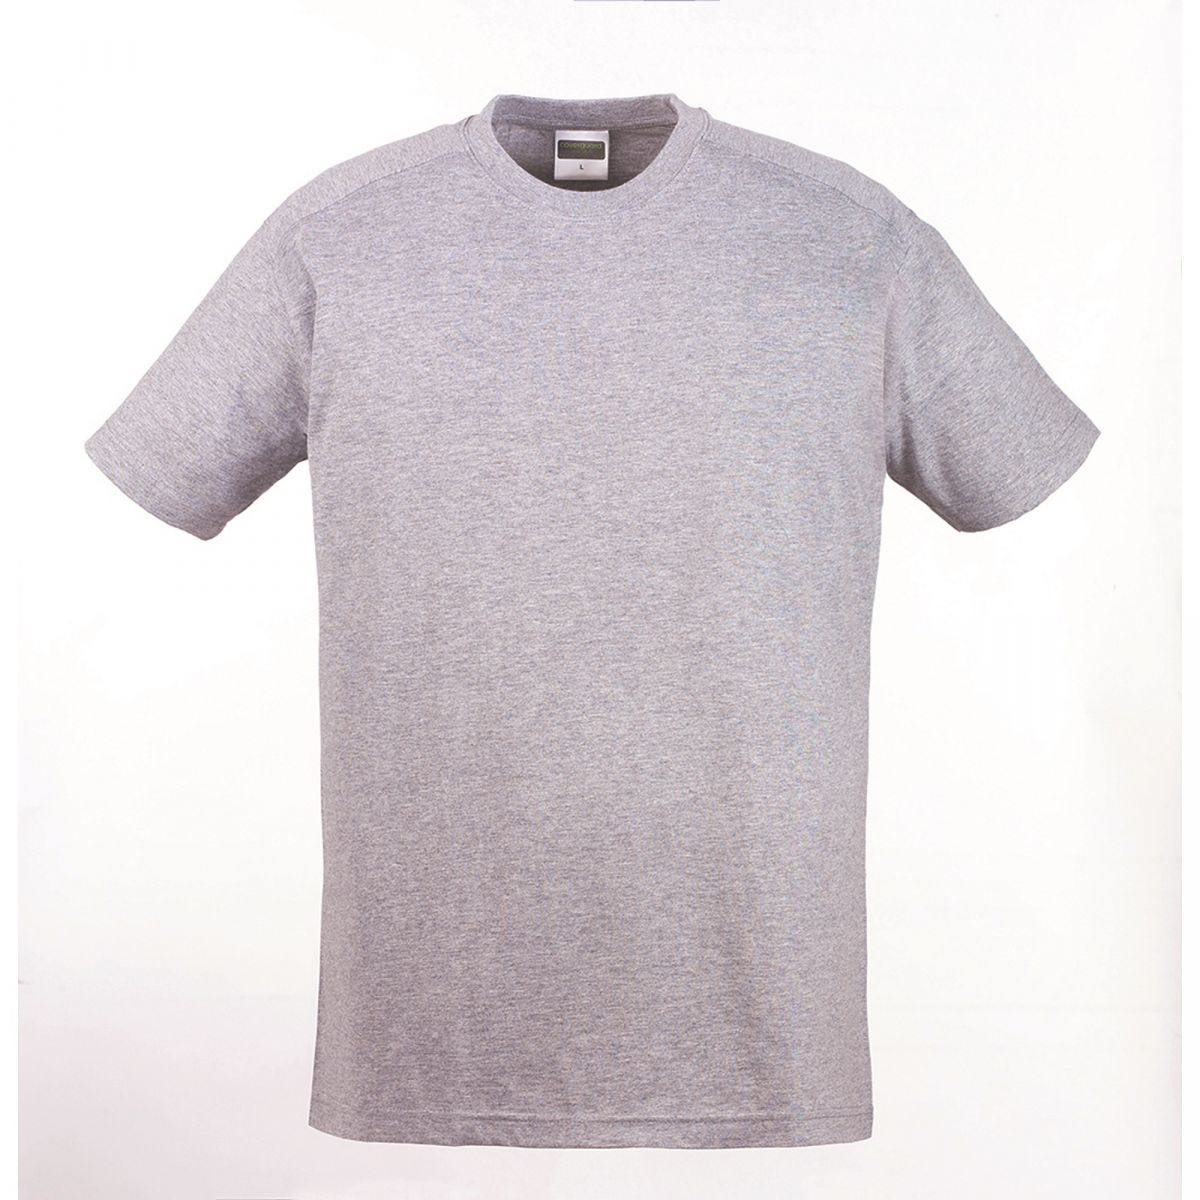 HIKE T-shirt MC gris chiné, 85% coton/15% viscose, 190g/m² - COVERGUARD - Taille M 0